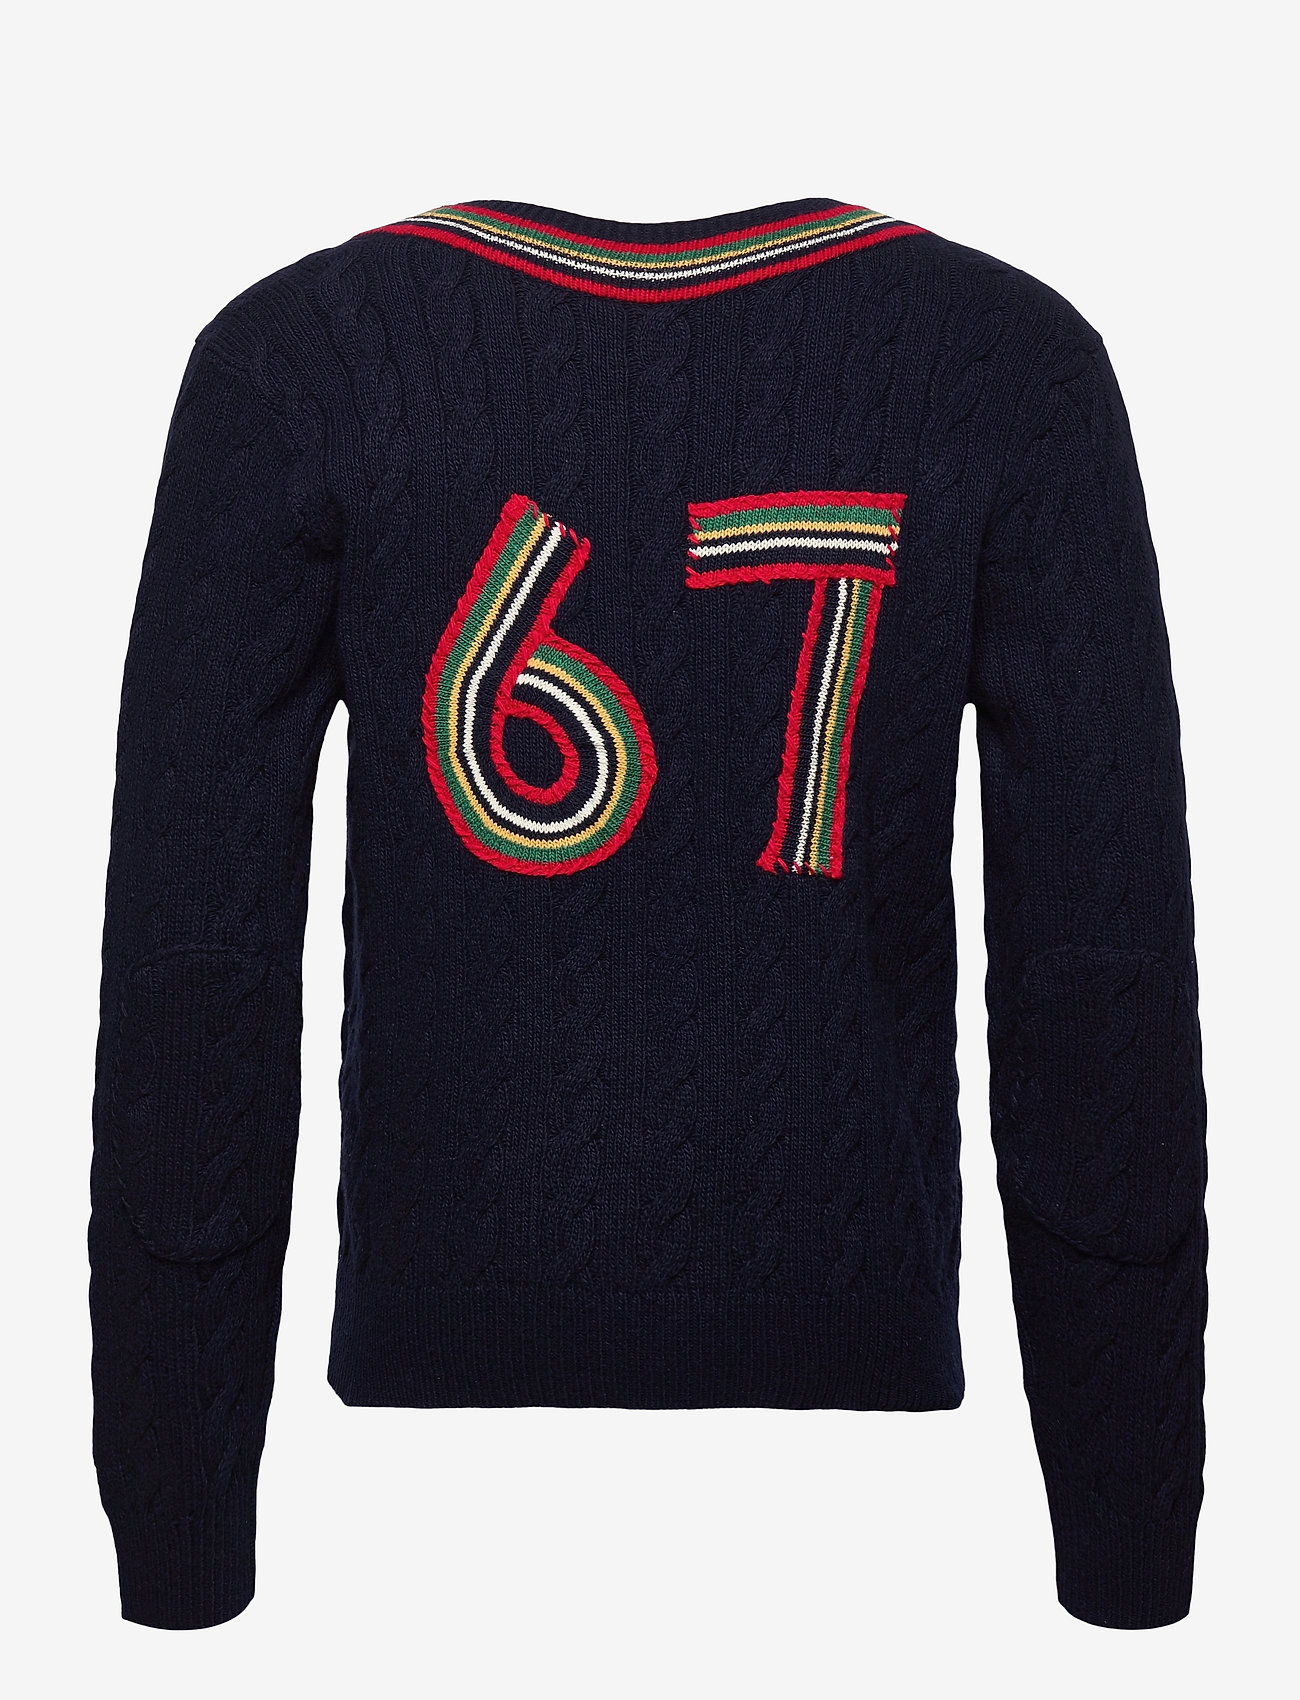 Polo Ralph Lauren - The 67 Cricket Sweater - knitted v-necks - navy multi - 1